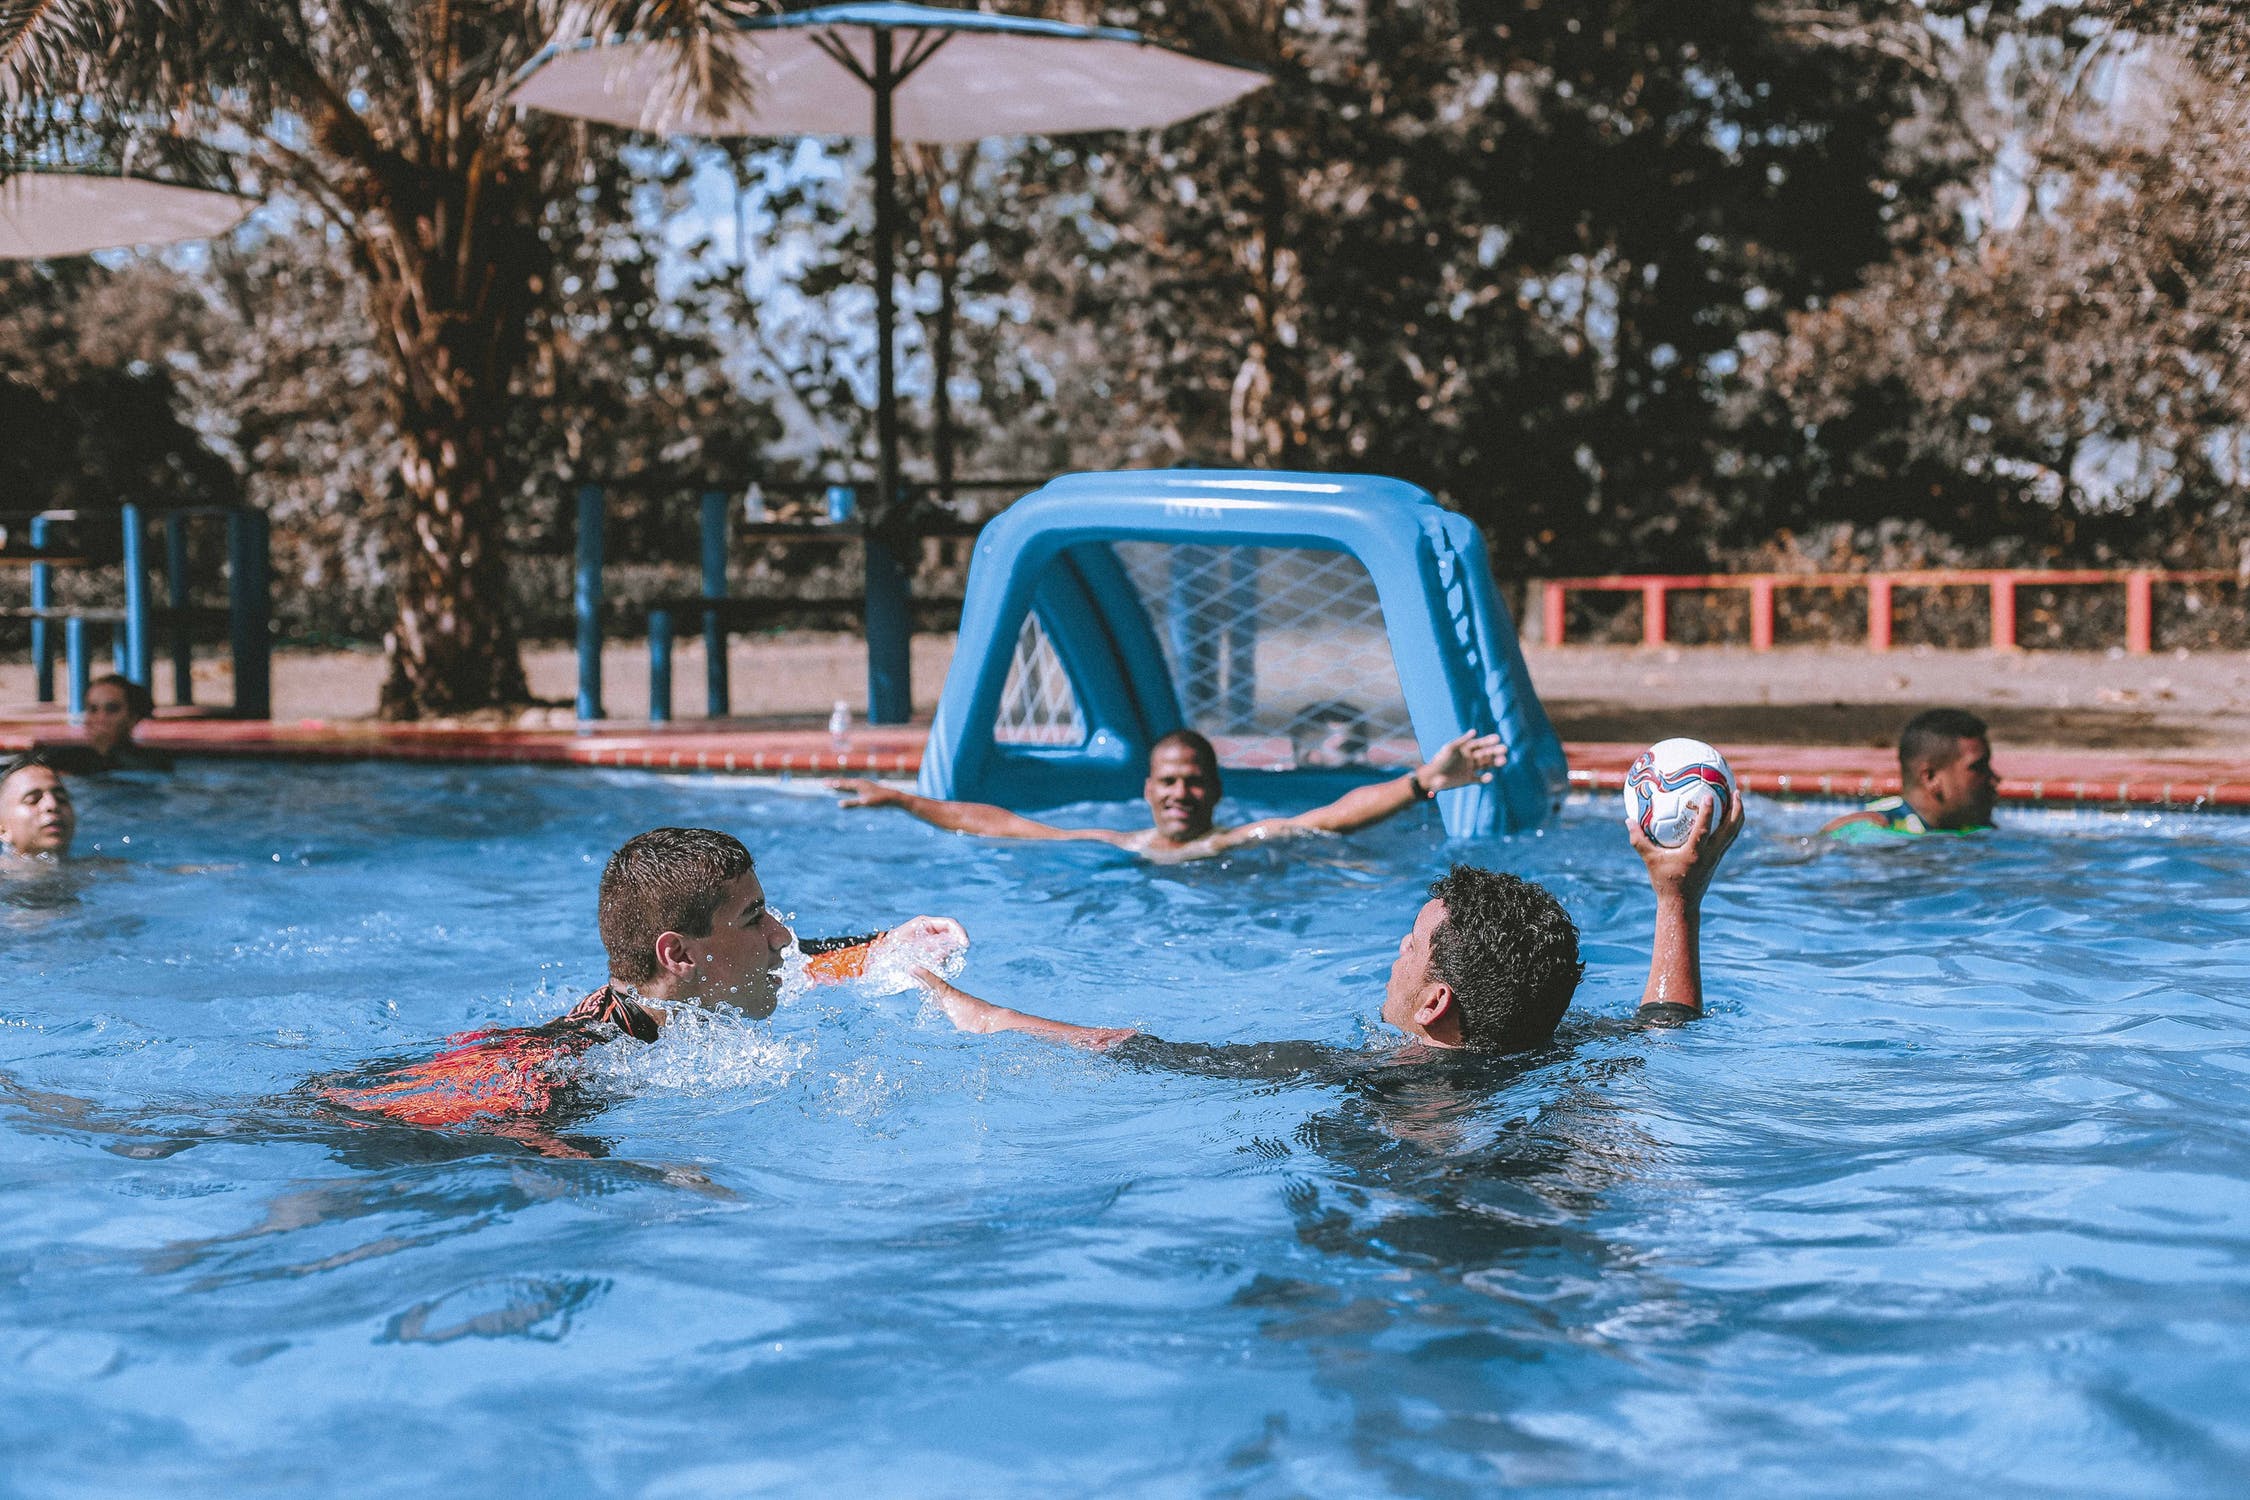 Juegos de deportes de piscina que no puedes perderte este verano